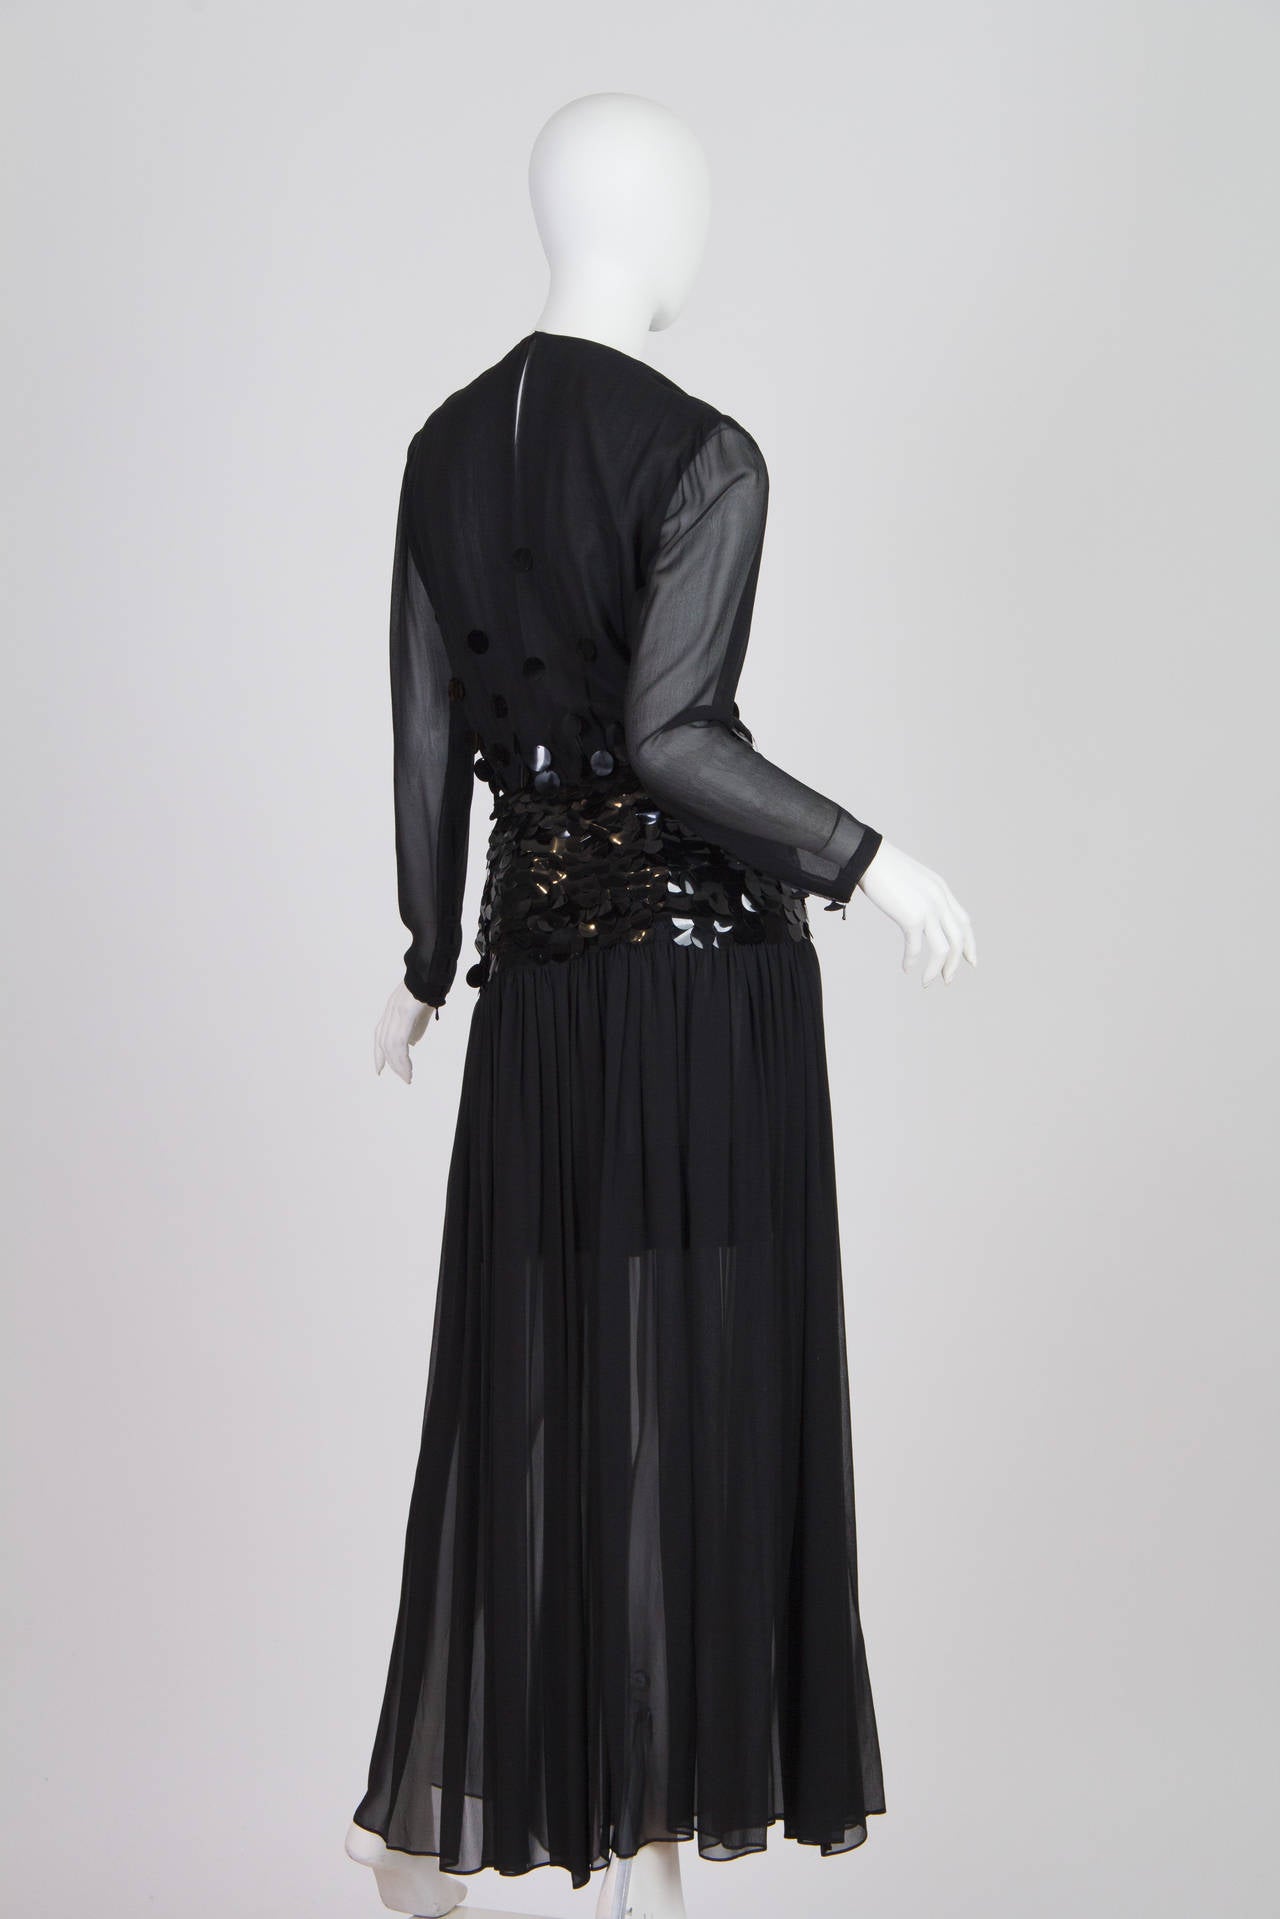 Noir PAULINE TRIGERE - Robe à manches longues en mousseline de soie perlée noire, années 1980 en vente